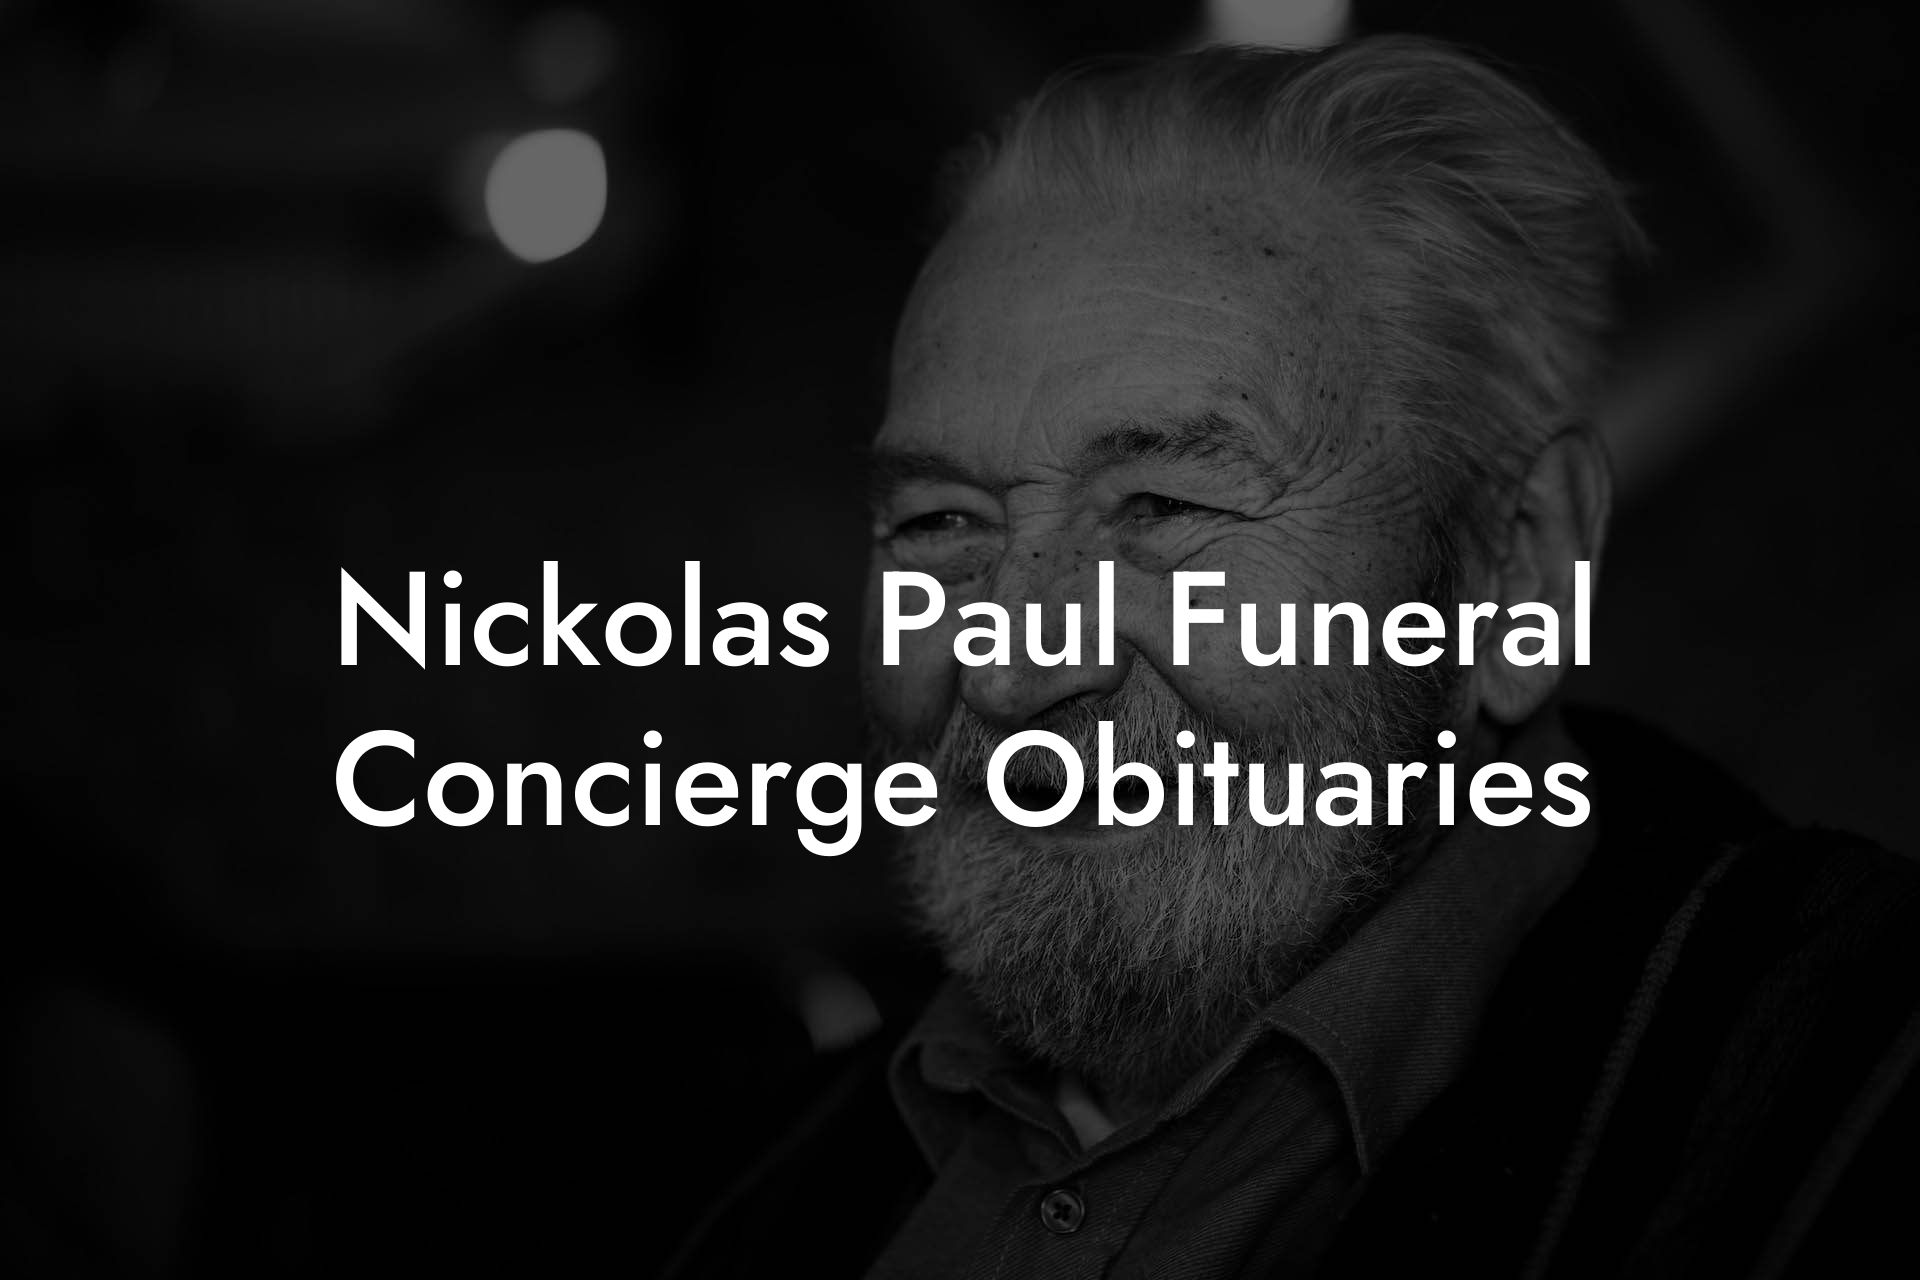 Nickolas Paul Funeral Concierge Obituaries